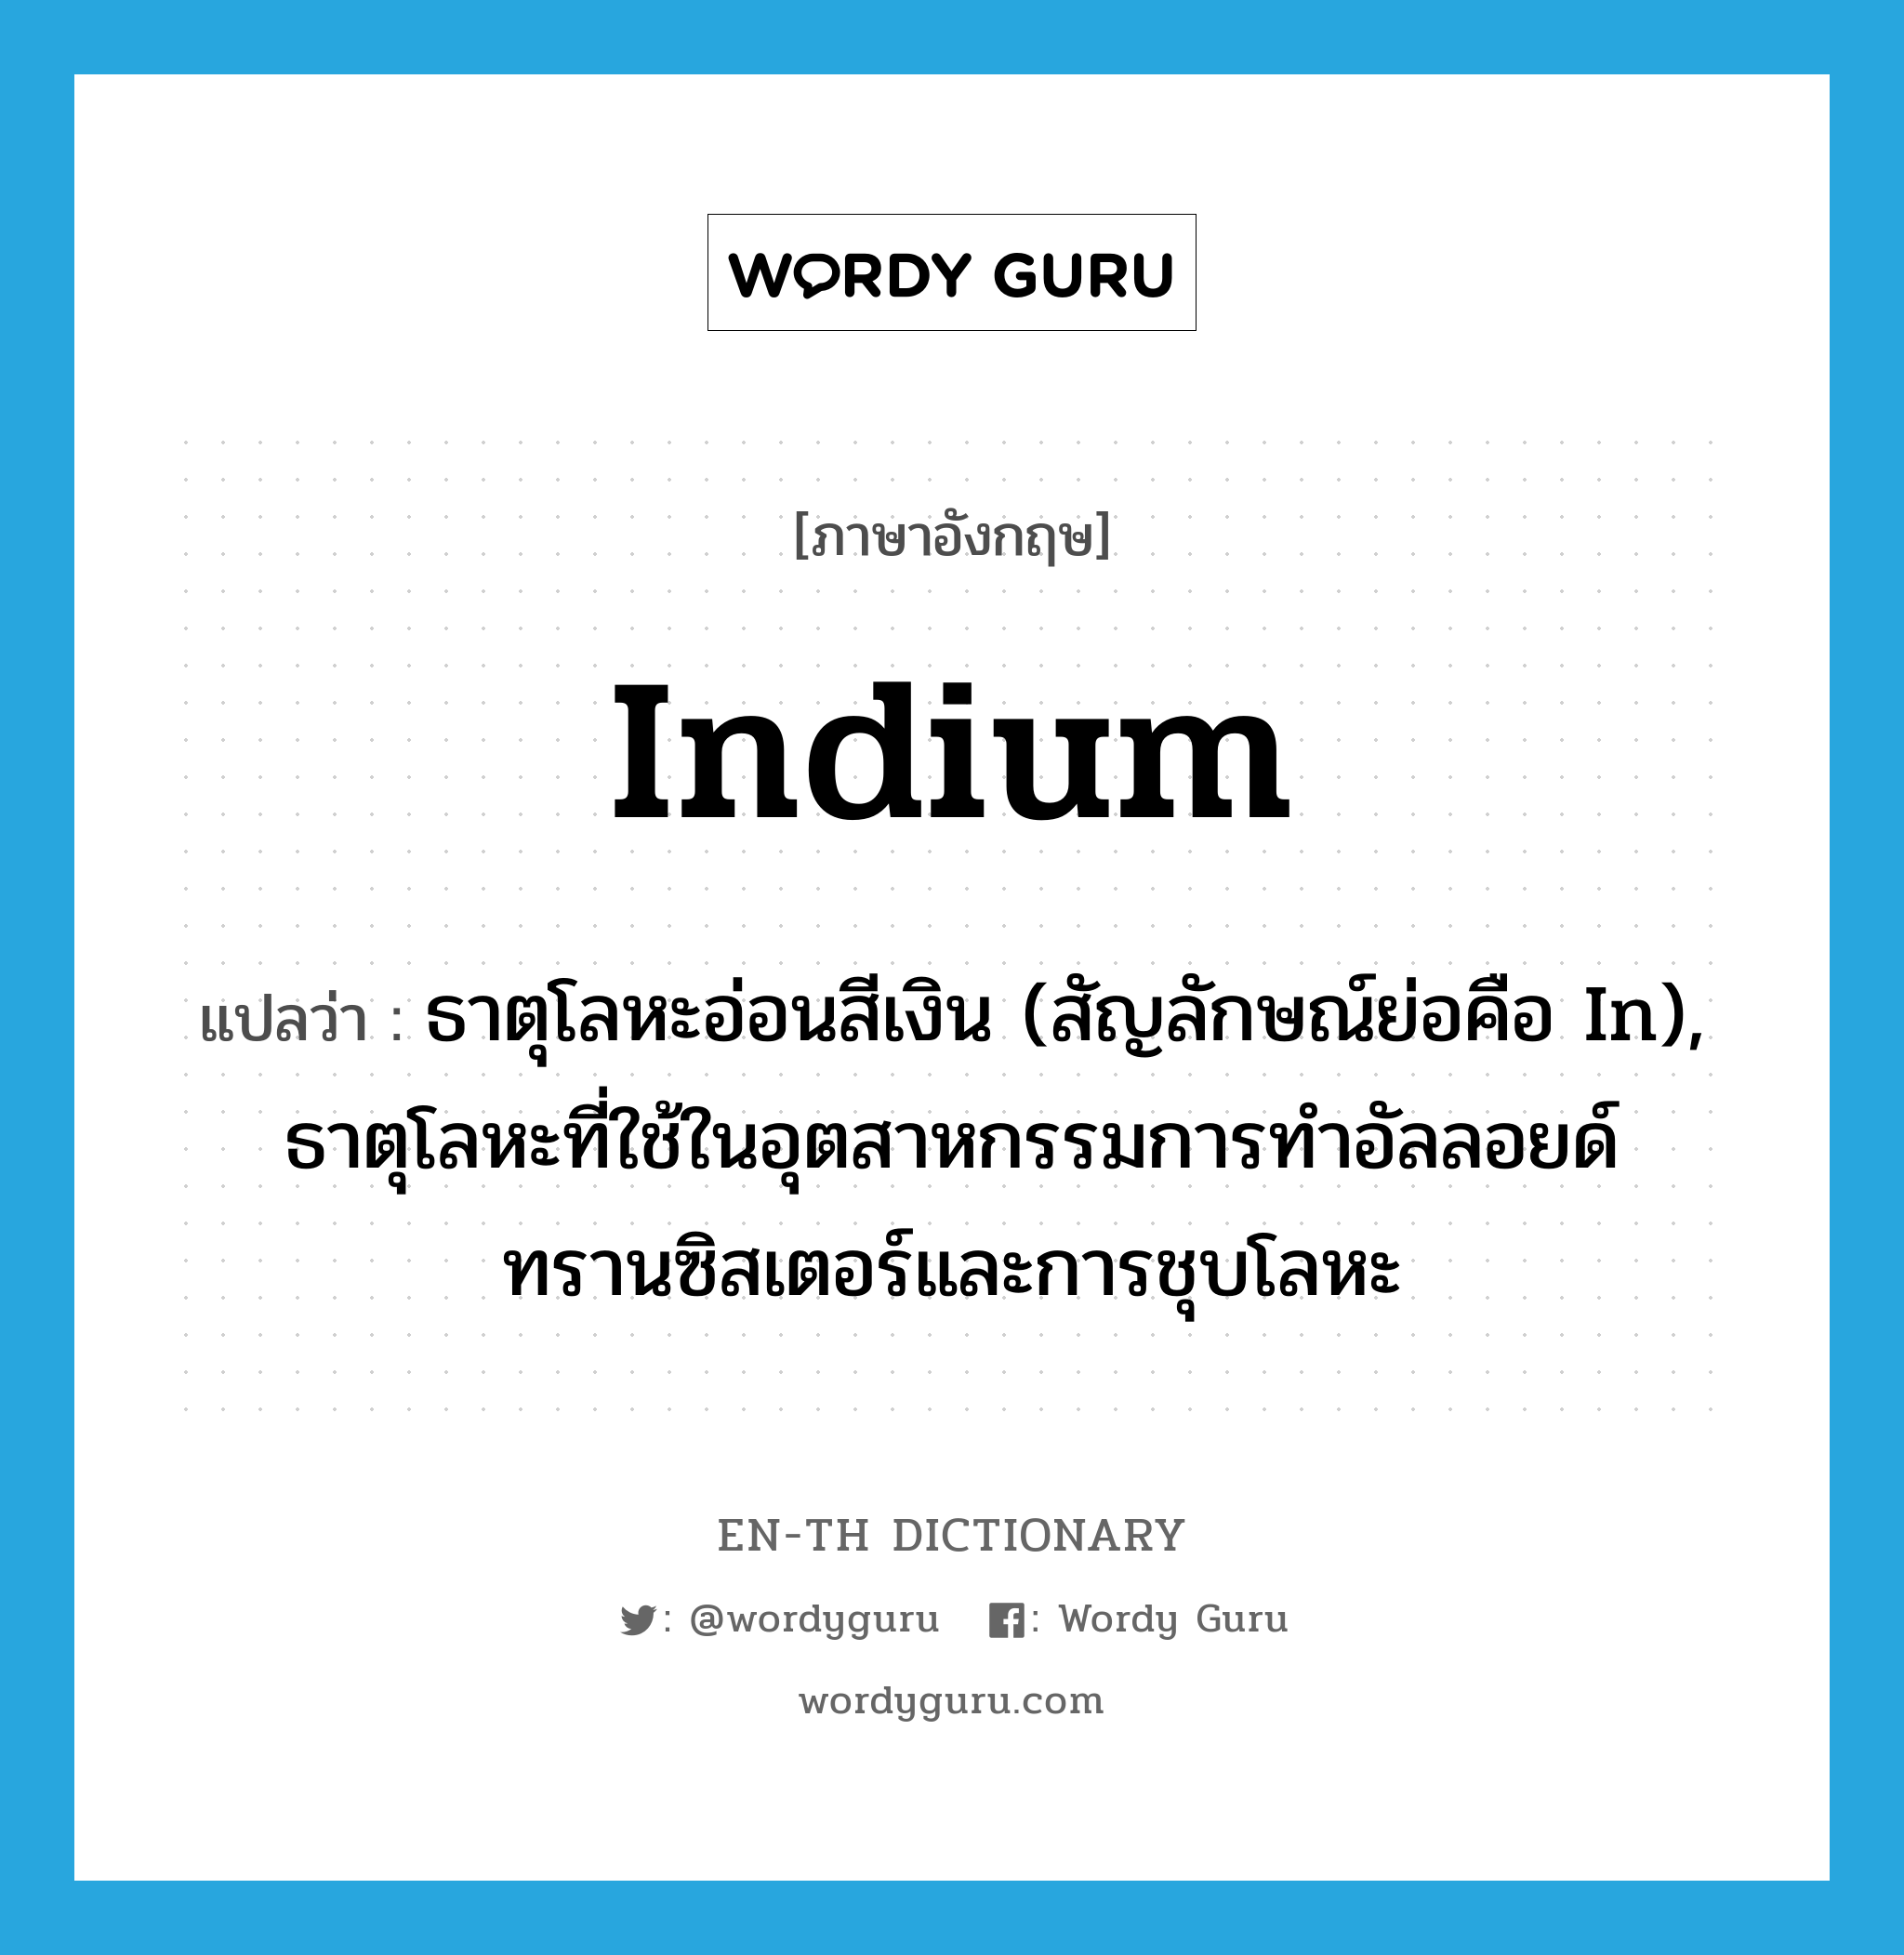 indium แปลว่า?, คำศัพท์ภาษาอังกฤษ indium แปลว่า ธาตุโลหะอ่อนสีเงิน (สัญลักษณ์ย่อคือ In), ธาตุโลหะที่ใช้ในอุตสาหกรรมการทำอัลลอยด์ ทรานซิสเตอร์และการชุบโลหะ ประเภท N หมวด N